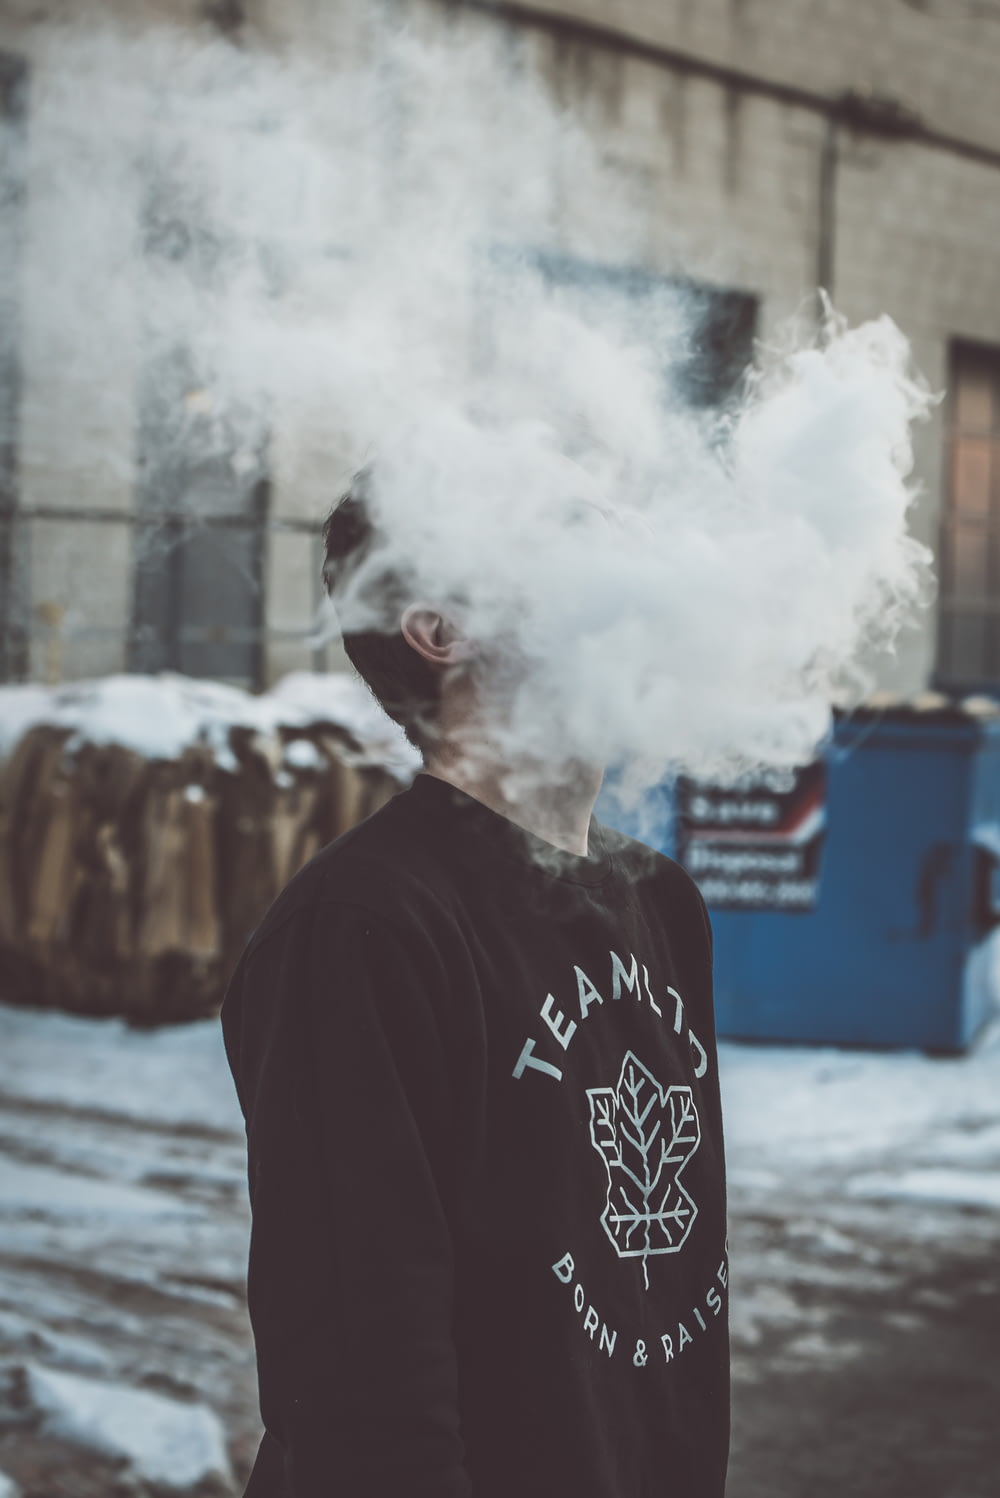 Un homme debout devant un immeuble avec un nuage de fumée sortant de